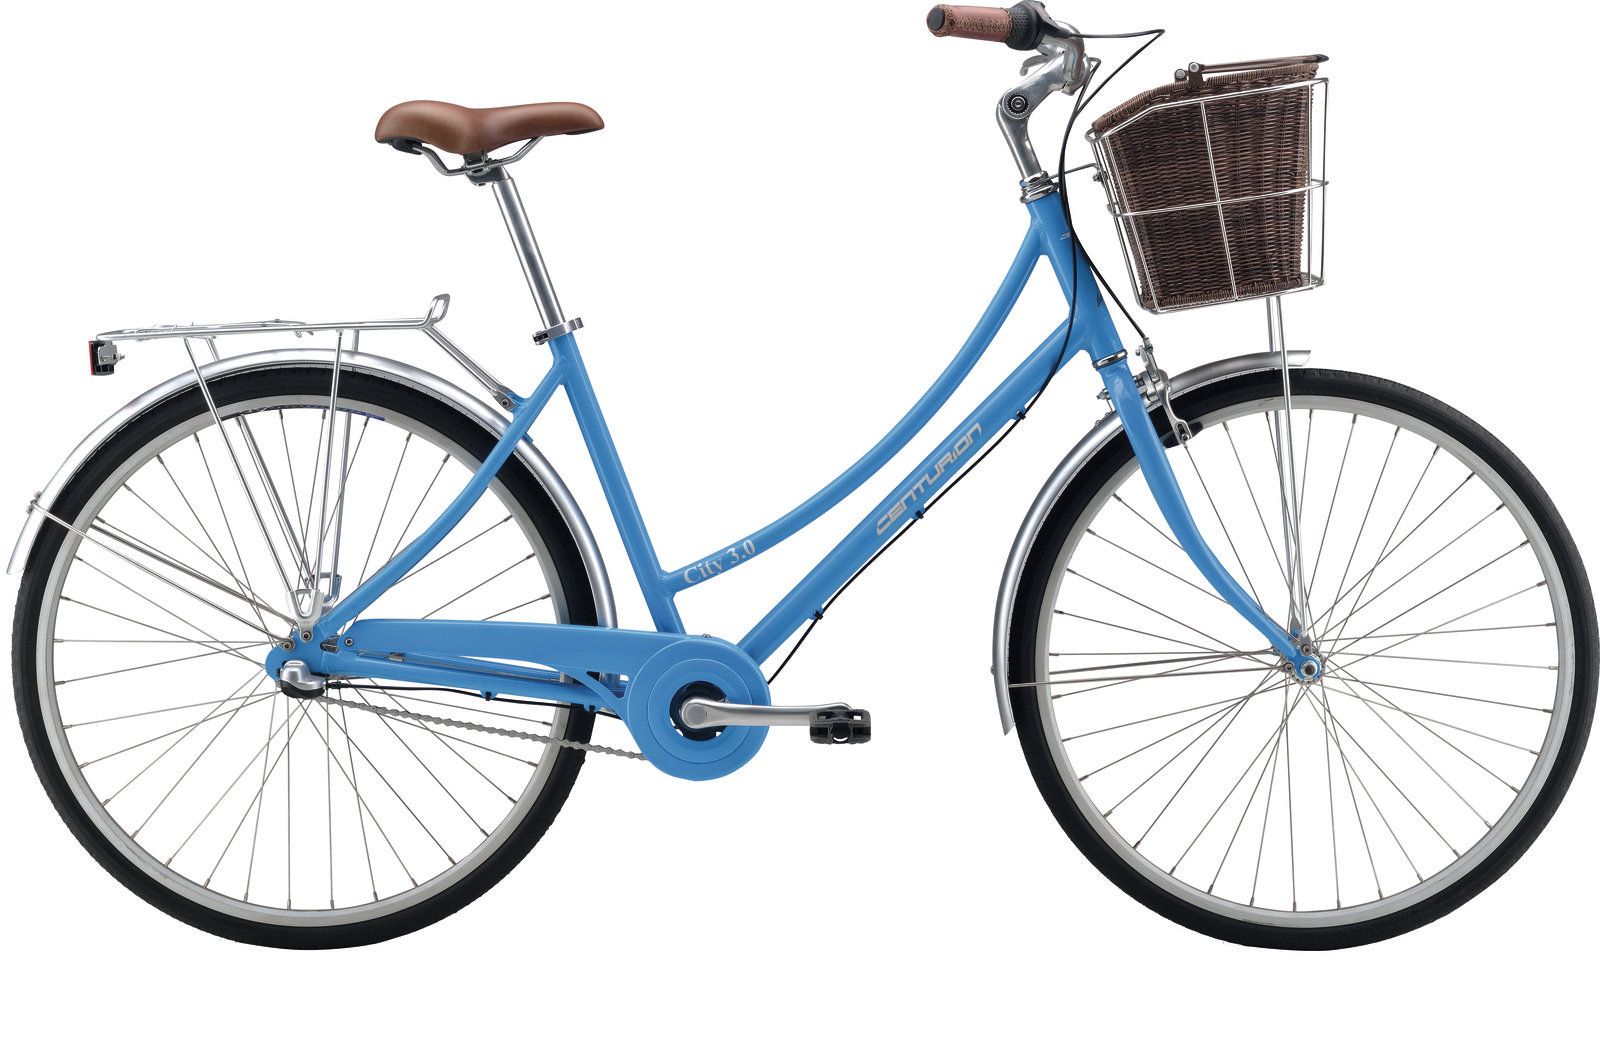  Отзывы о Трехколесный детский велосипед Centurion City 3.0 2016